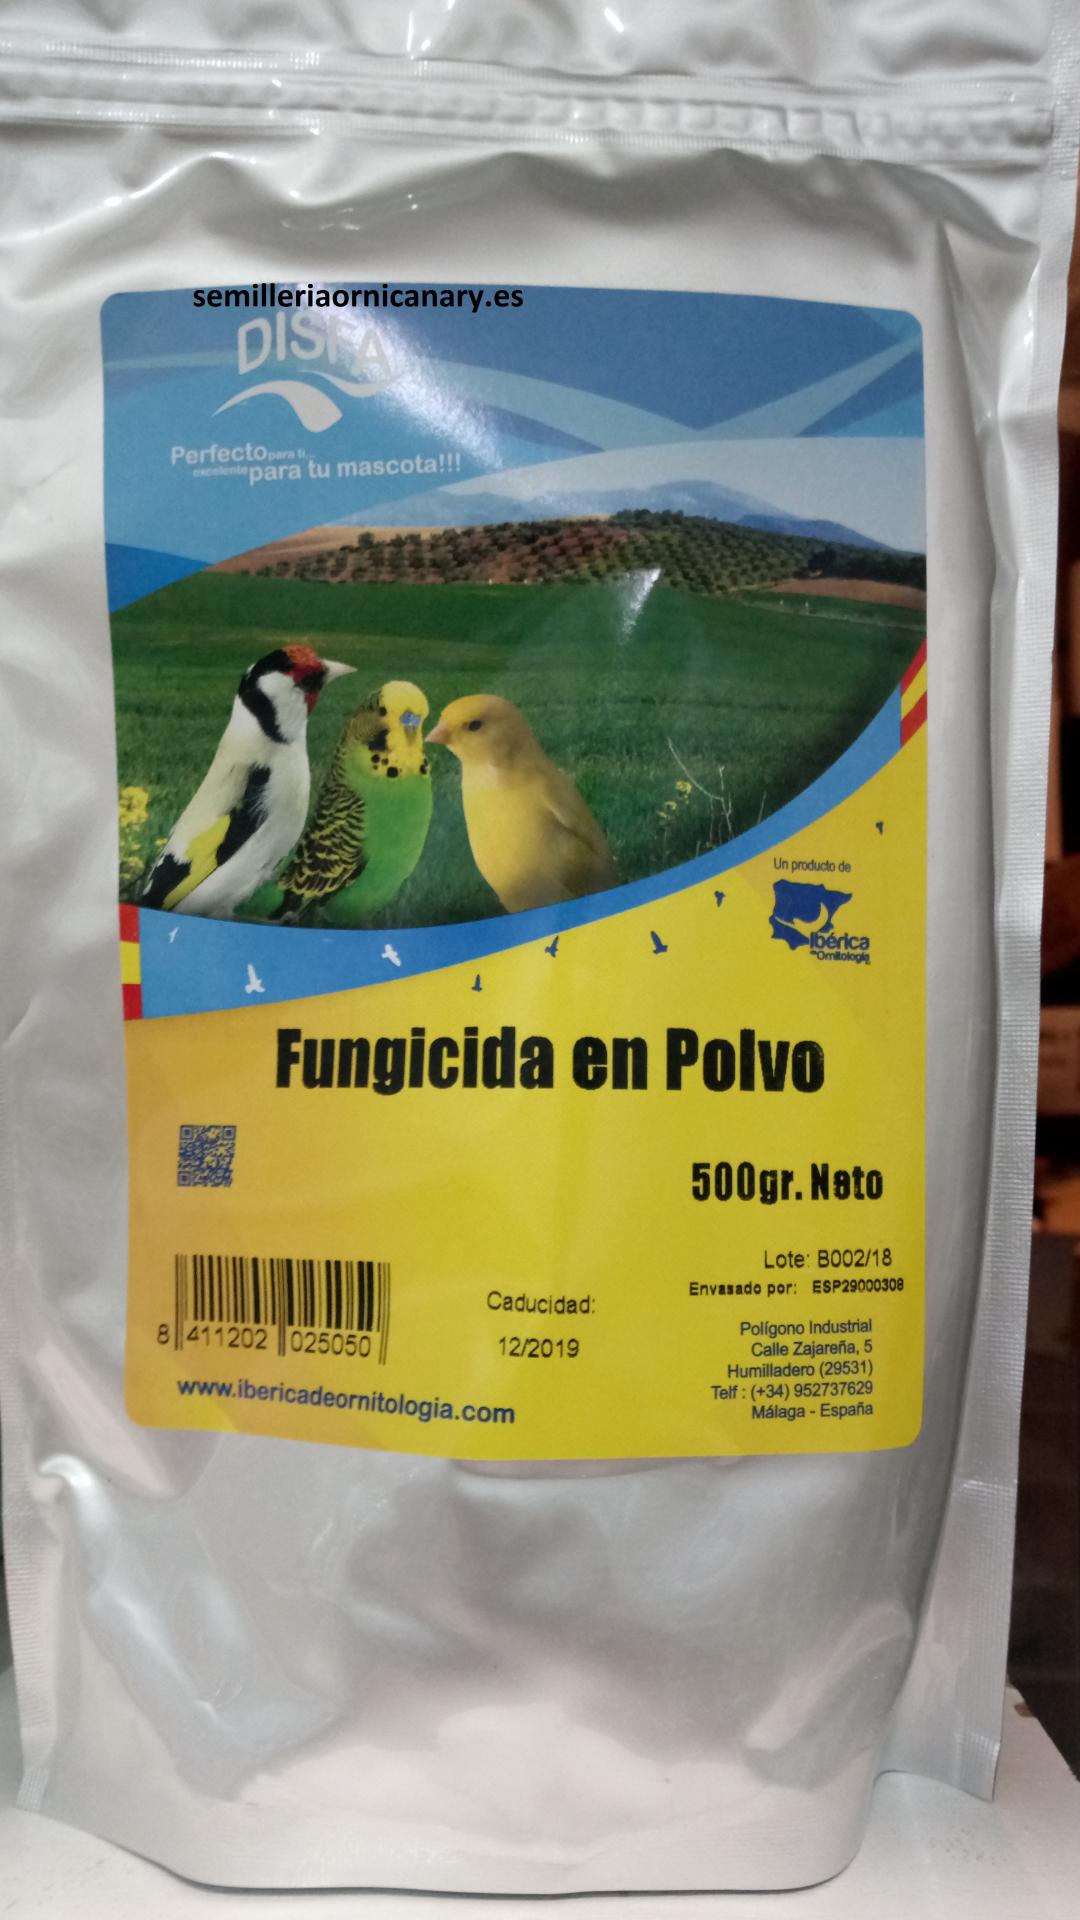 Fungicida en Polvo (Disfa) 500gr